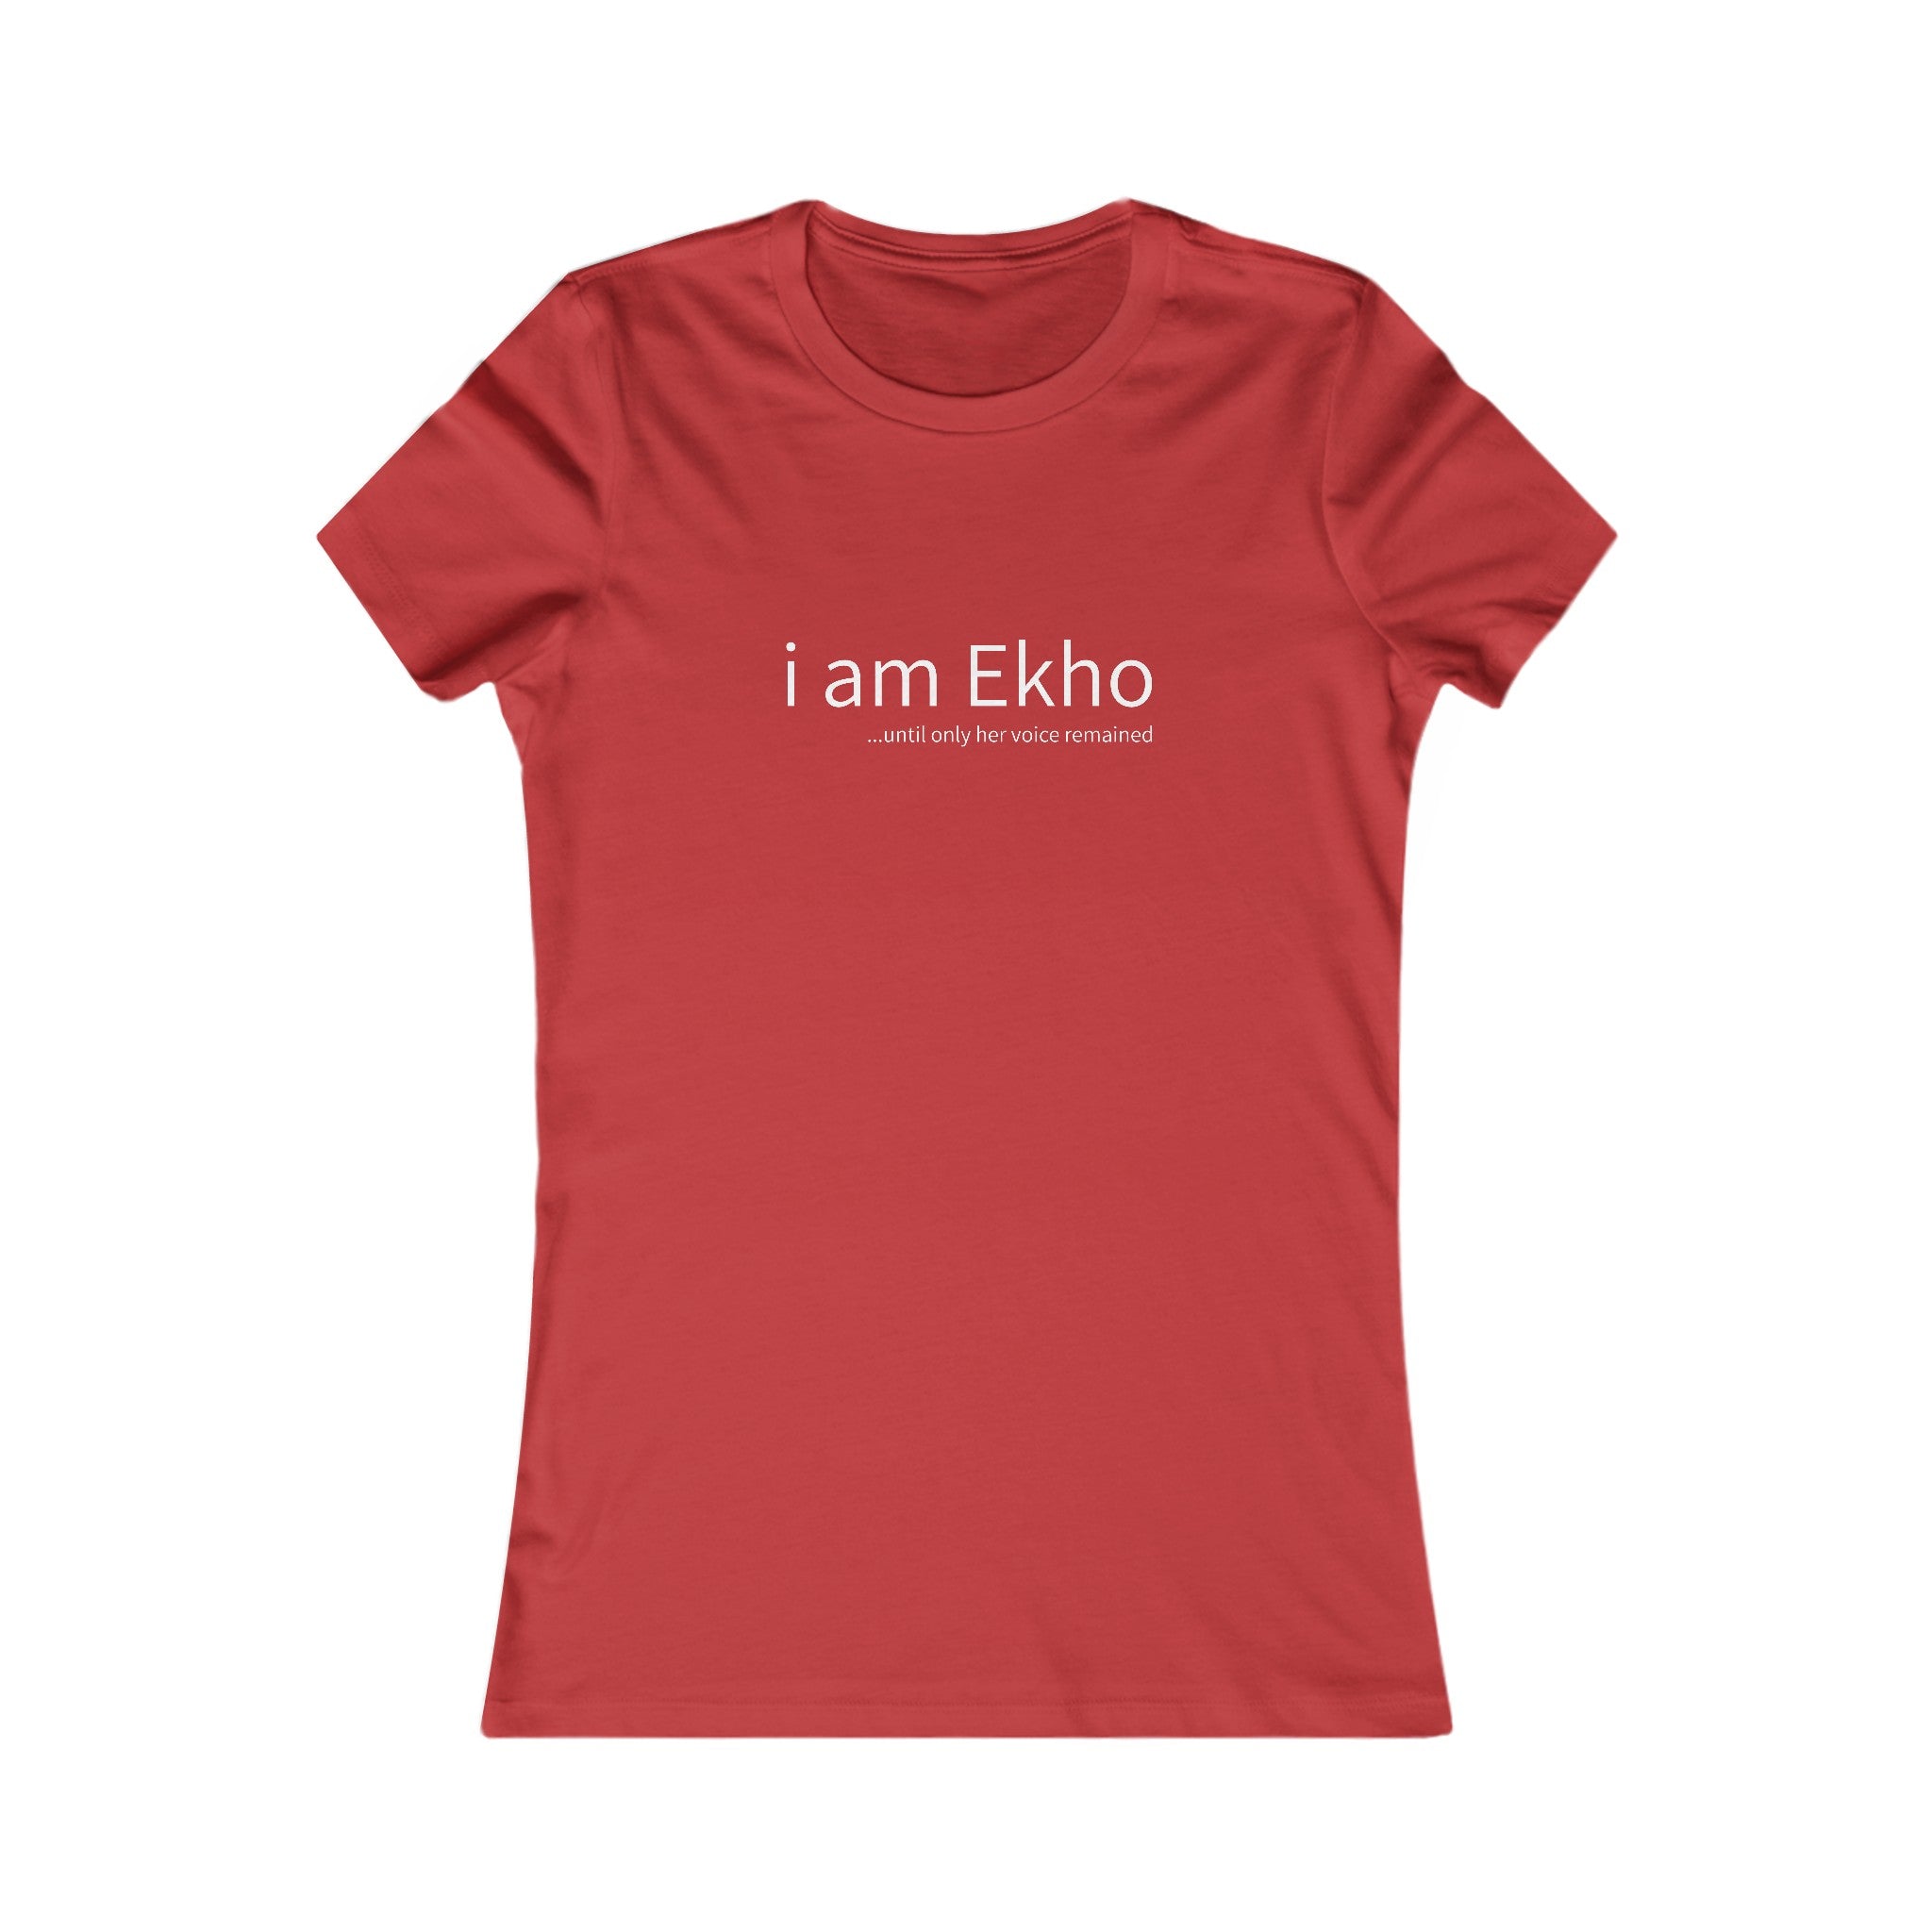 Ekho's Favorite T-Shirt